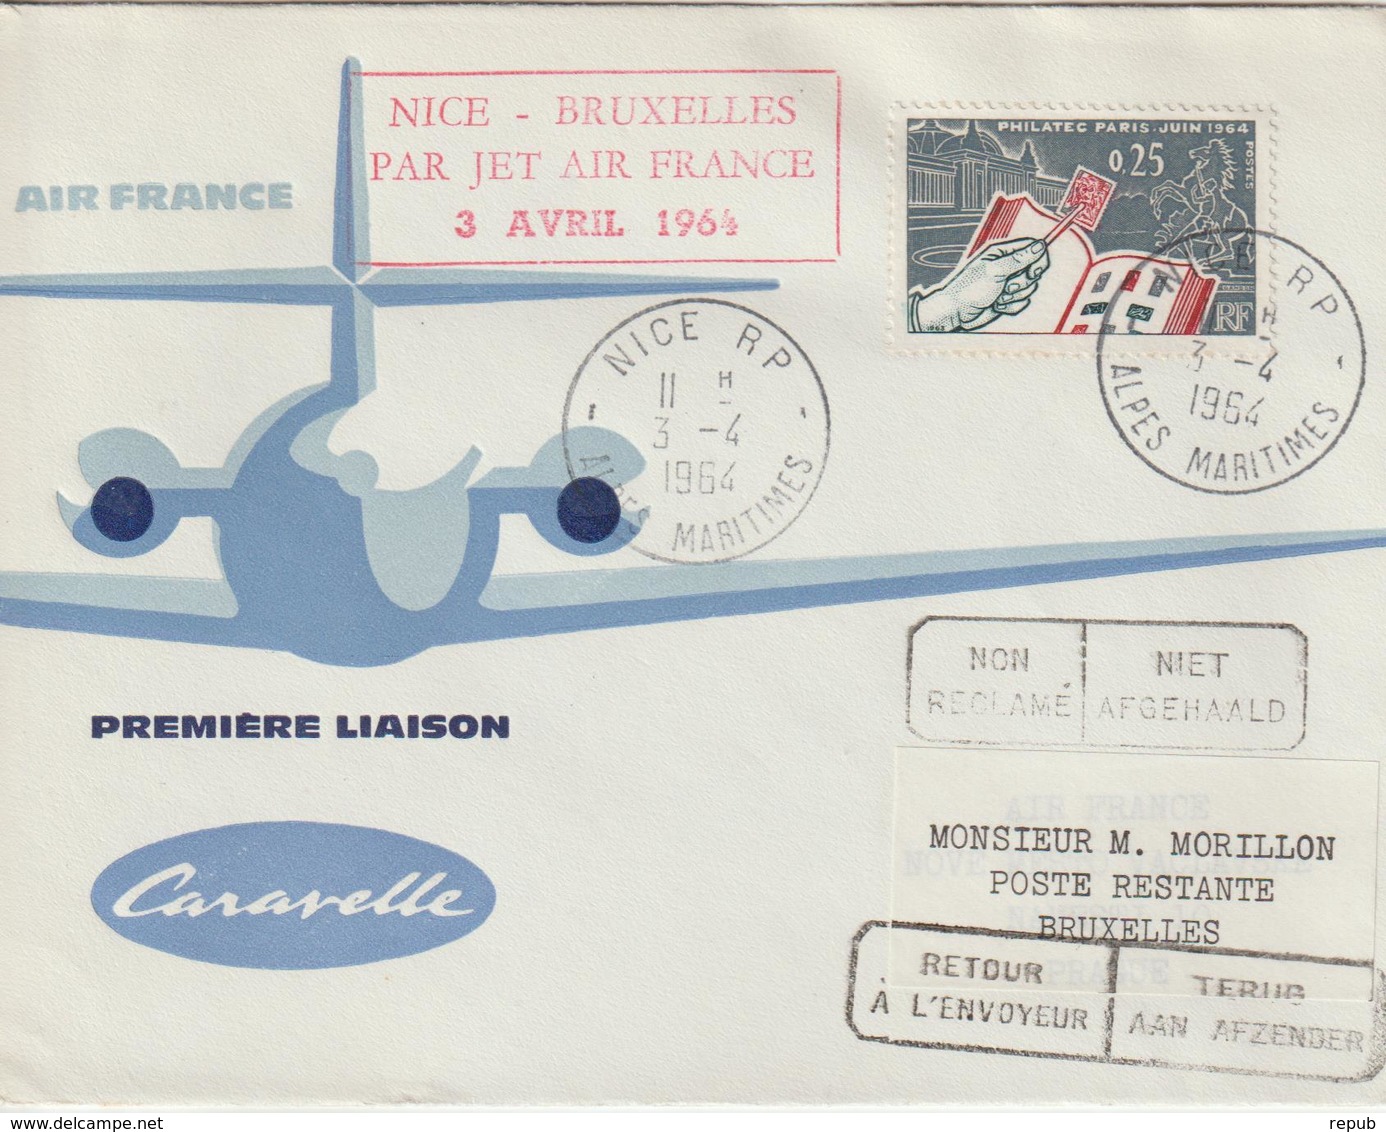 France 1964 Première Liaison Air France Nice Bruxelles - Premiers Vols